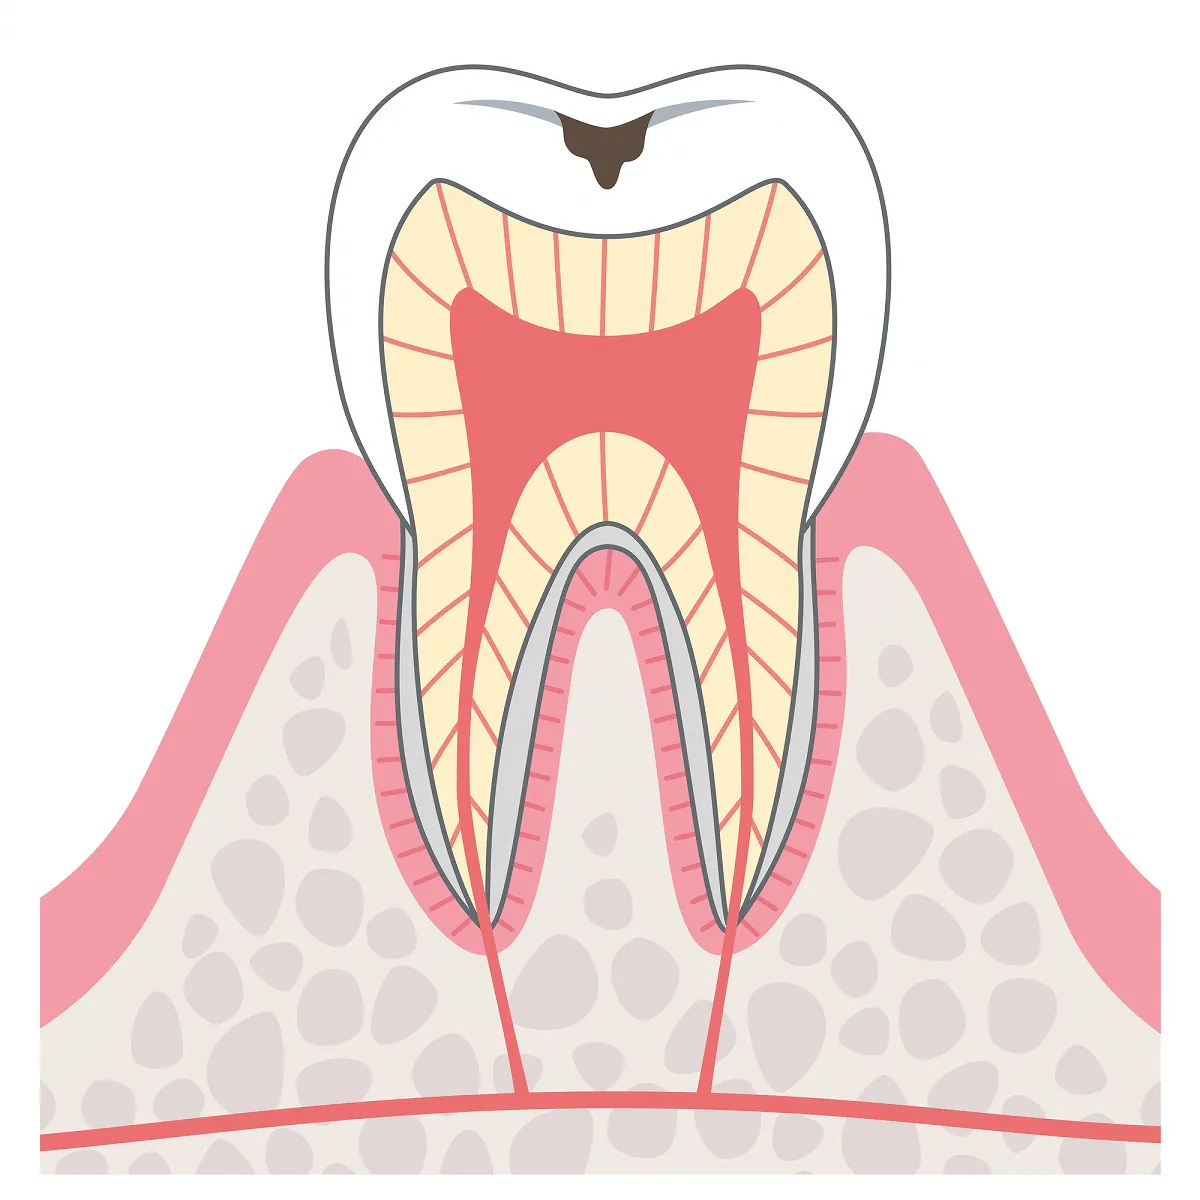 C1.エナメル質に小さな穴が開いたむし歯